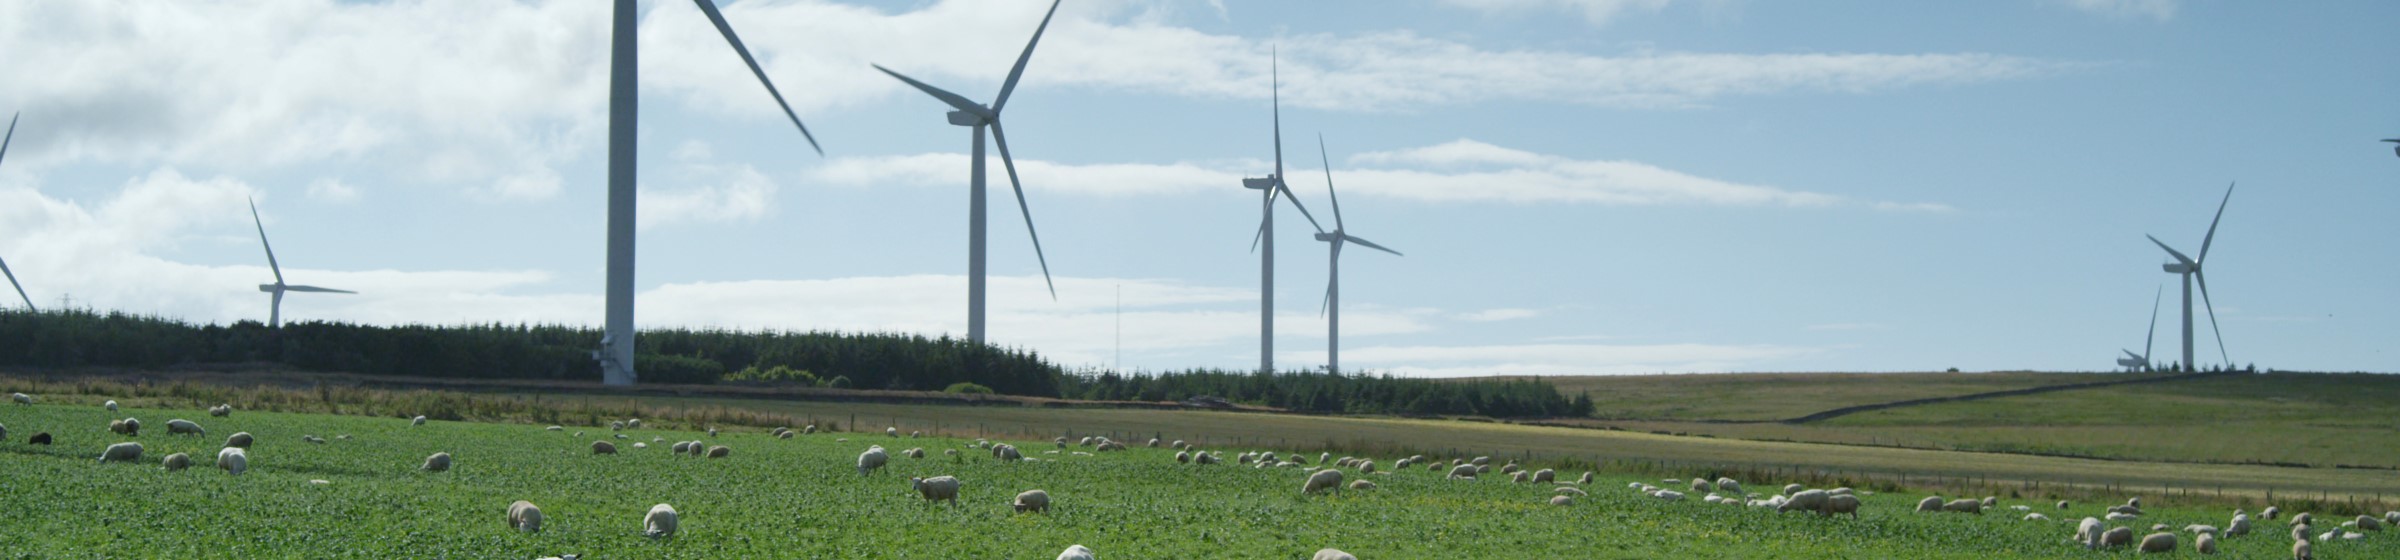 Baillie windpark - Schafe im Gras und mehrere Windräder